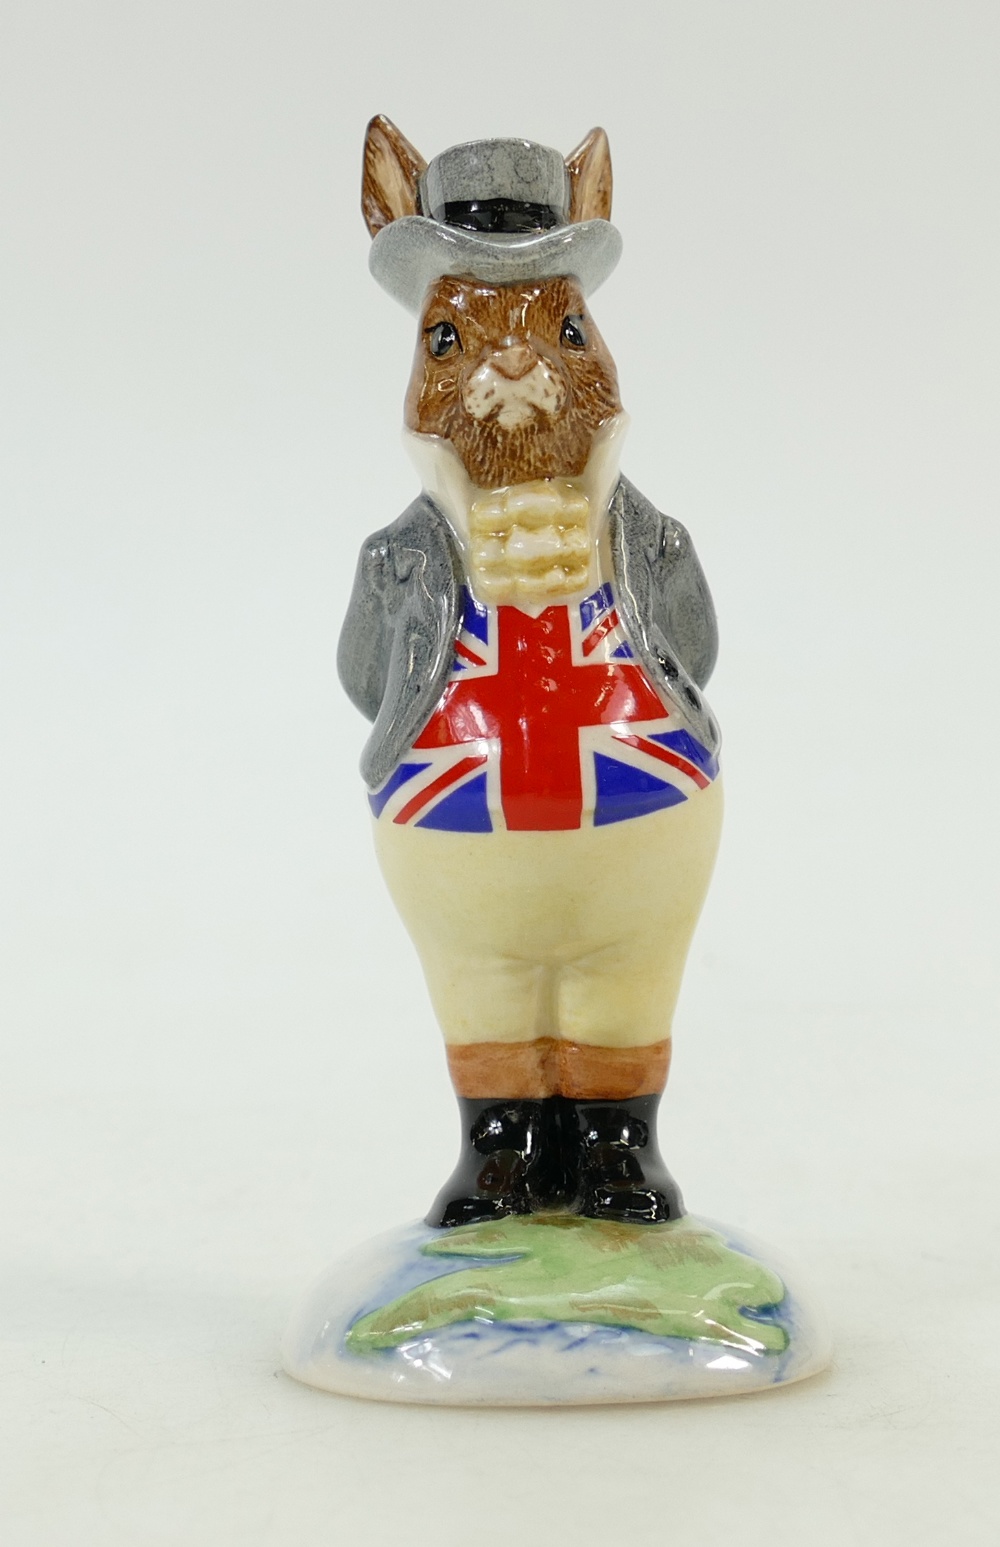 Royal Doulton Bunnykins figure DB134: John Bull UKI Ceramics limited edition ref DB134.